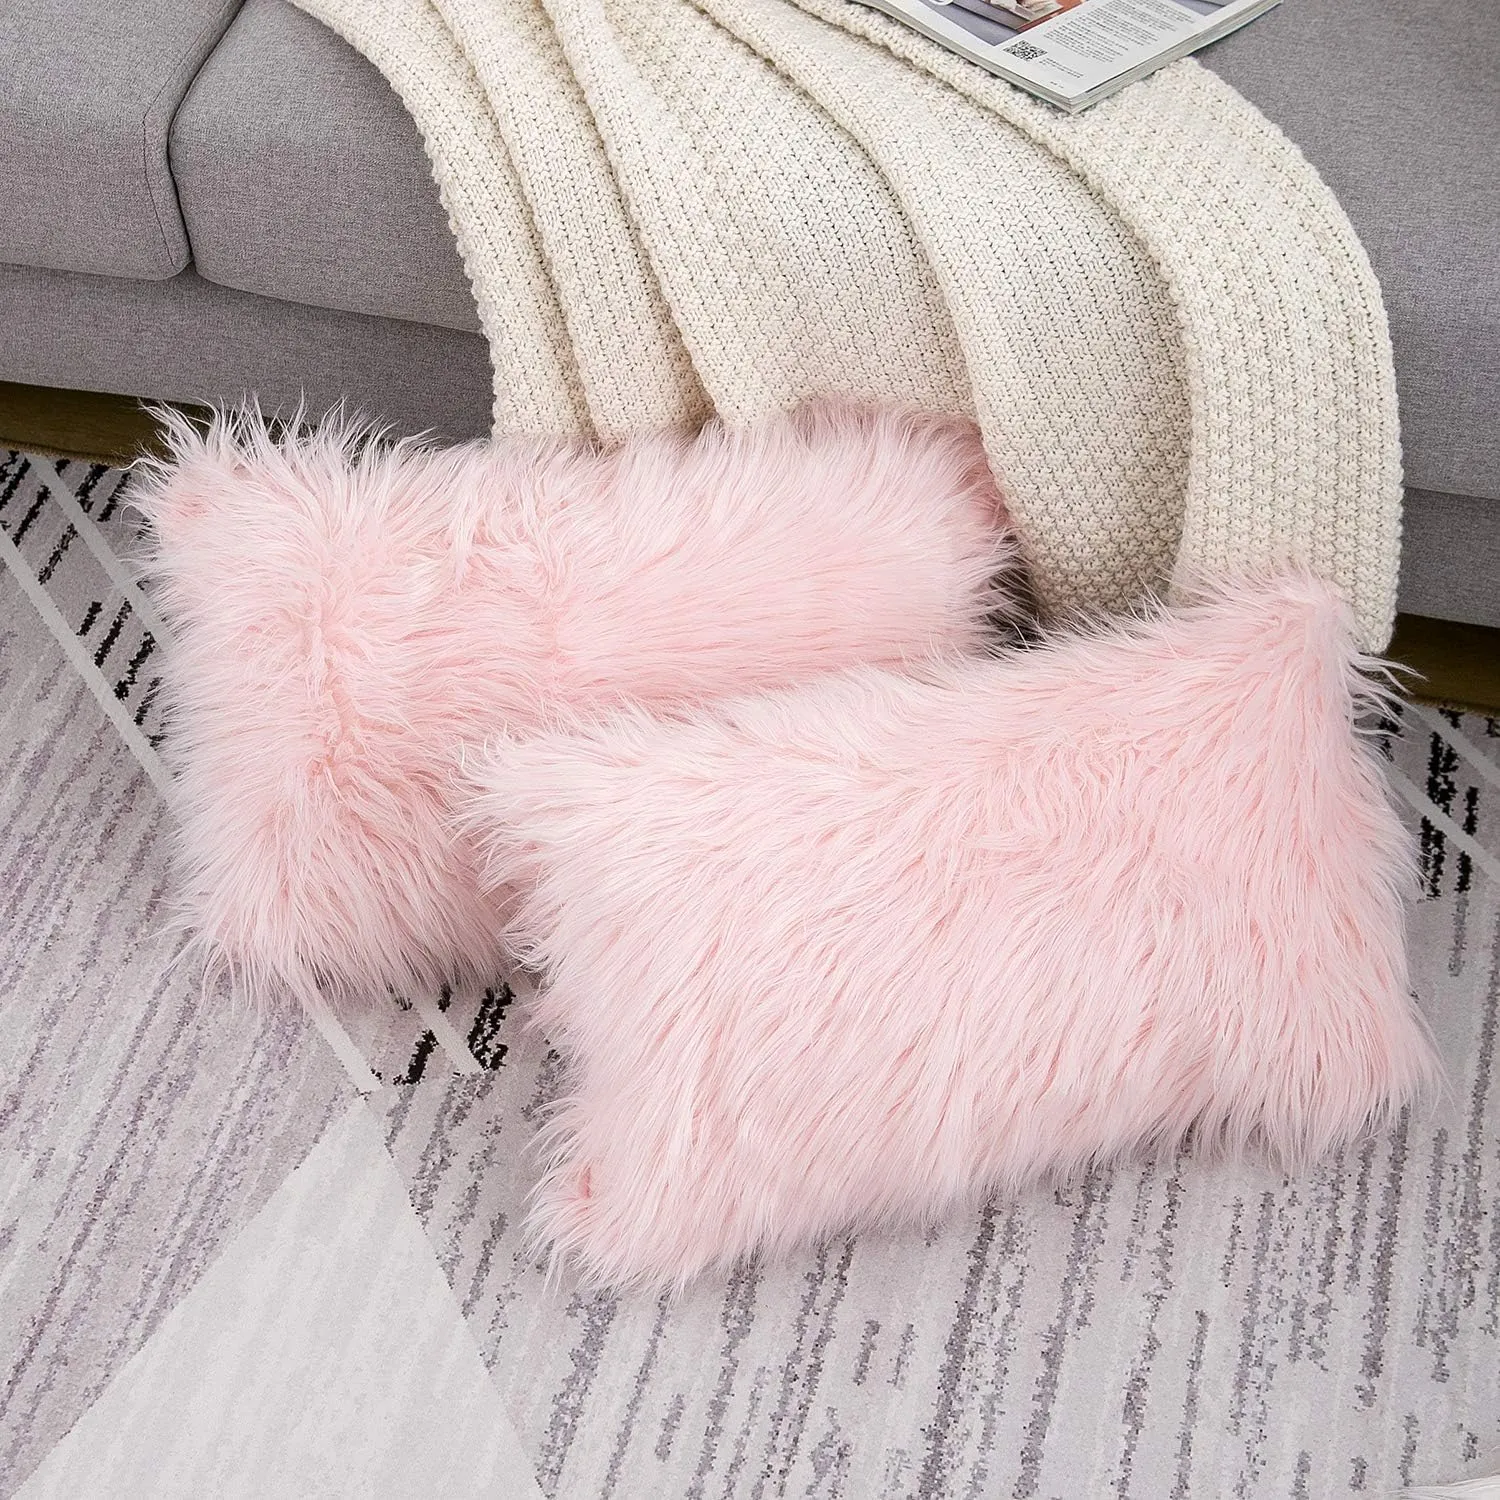 2つのピンクのふわふわの枕のバレンタインデーセット新しい高級シリーズメリノスタイルの赤面フェイクファー装飾スロー枕カバースクエア